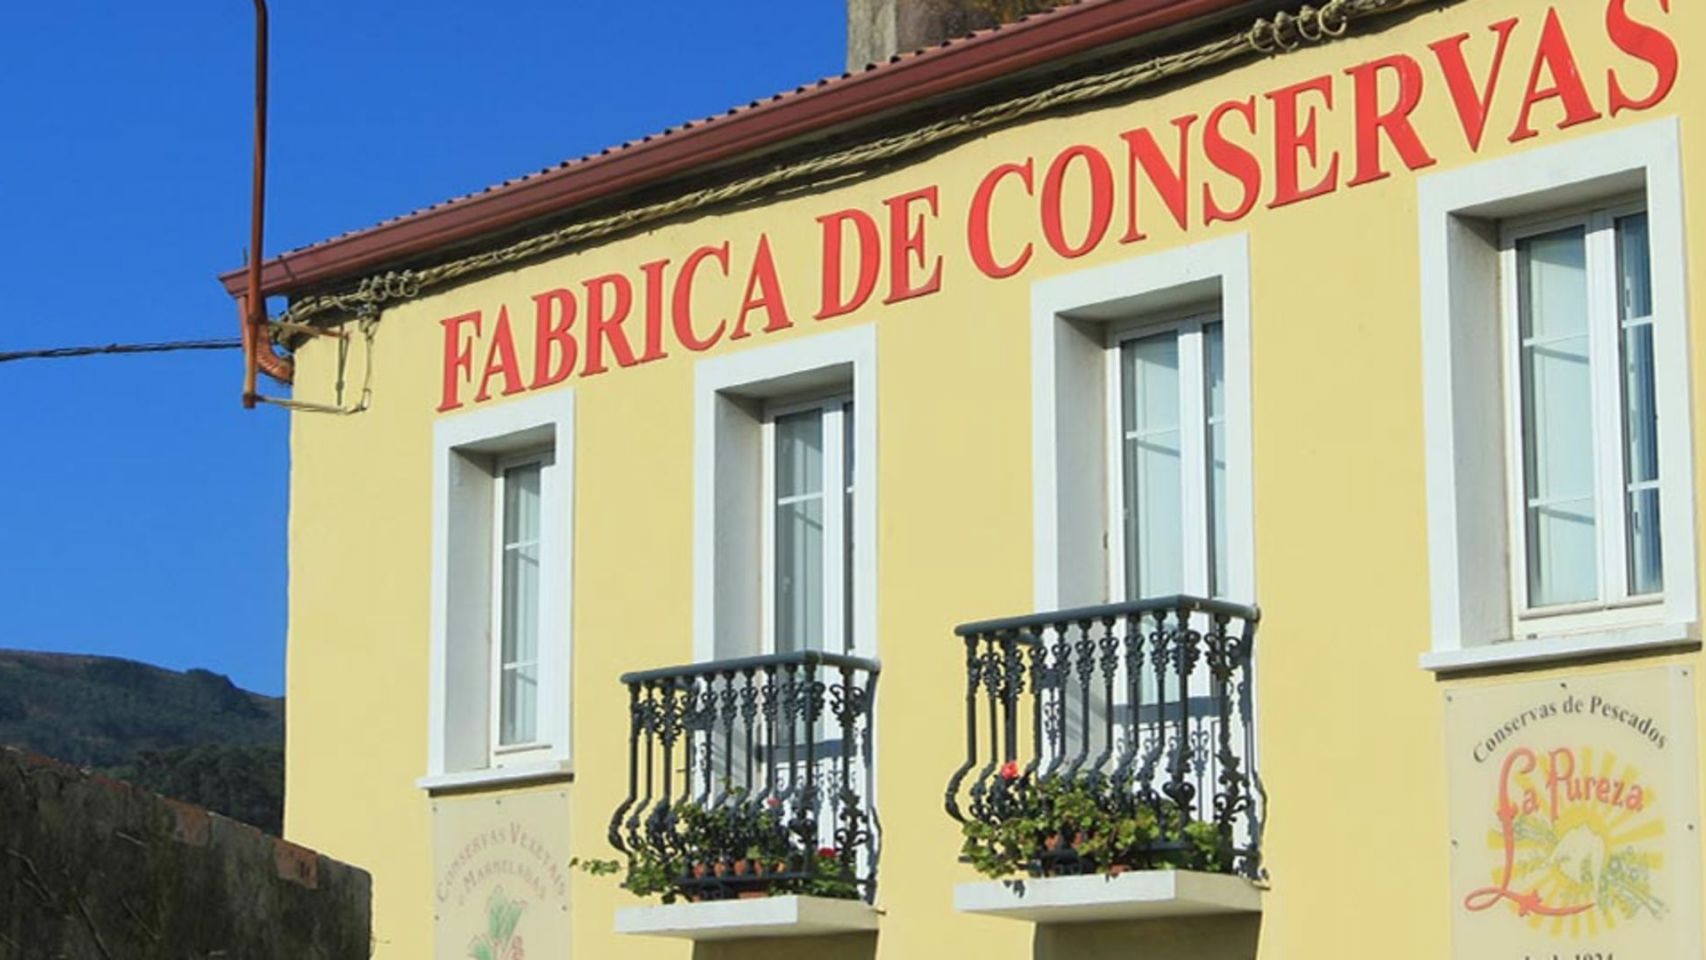 La fábrica de Conservas La Pureza, situada en Cariño. Fuente: lapureza.es